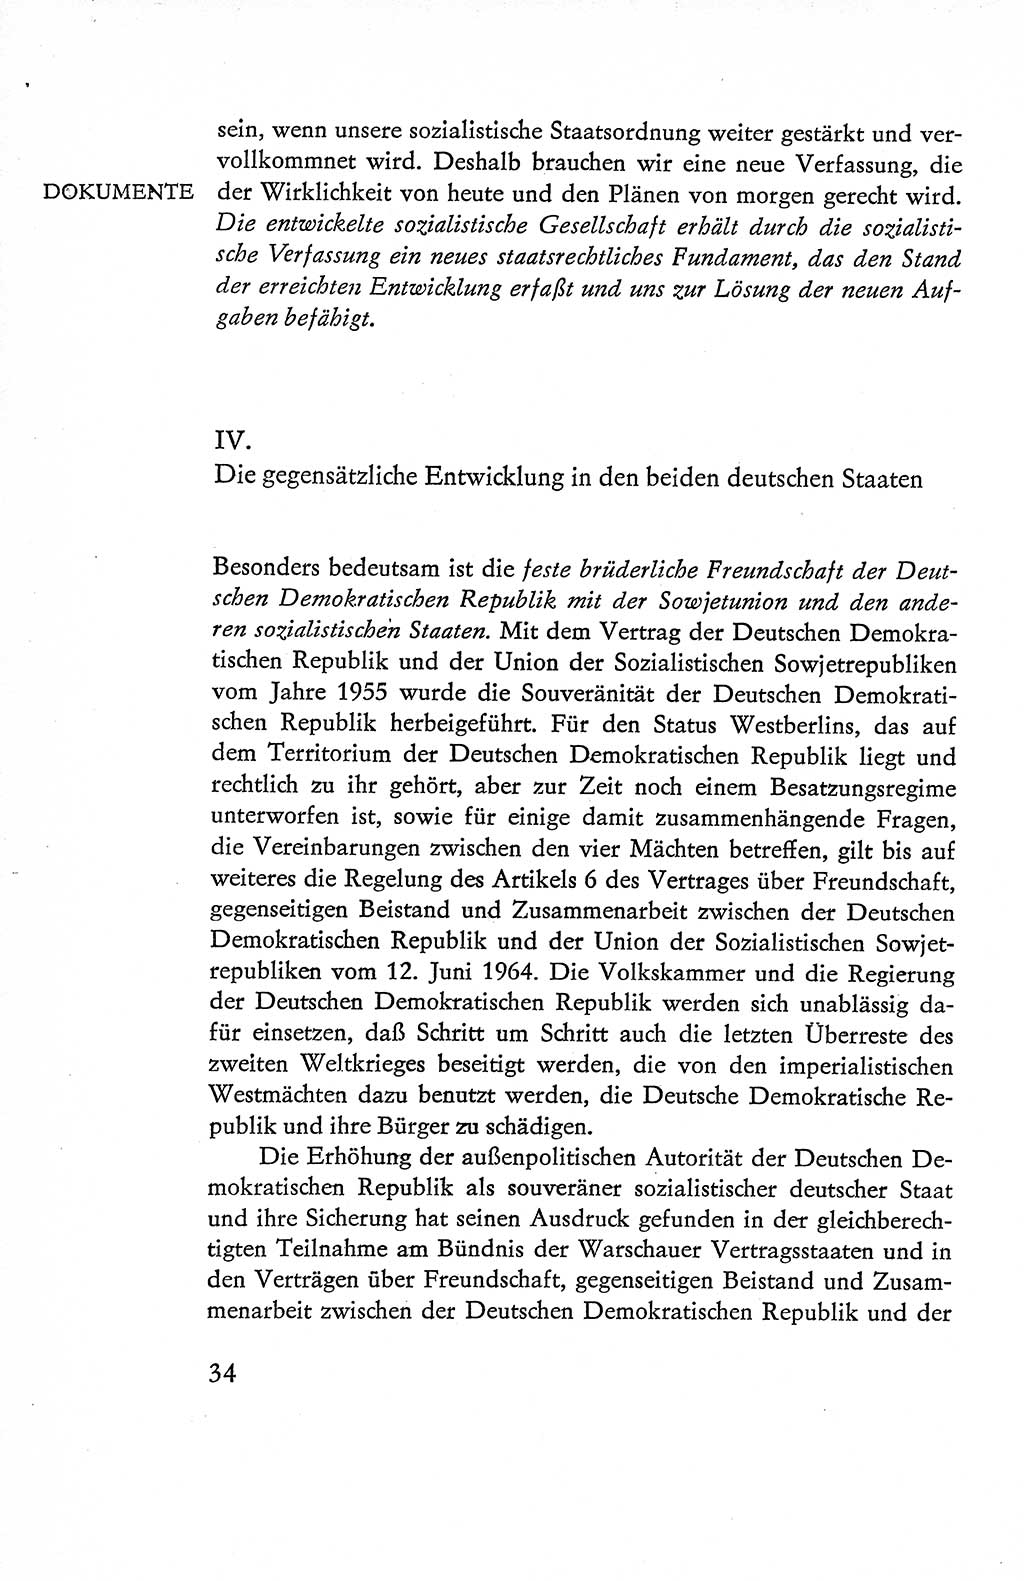 Verfassung der Deutschen Demokratischen Republik (DDR), Dokumente, Kommentar 1969, Band 1, Seite 34 (Verf. DDR Dok. Komm. 1969, Bd. 1, S. 34)